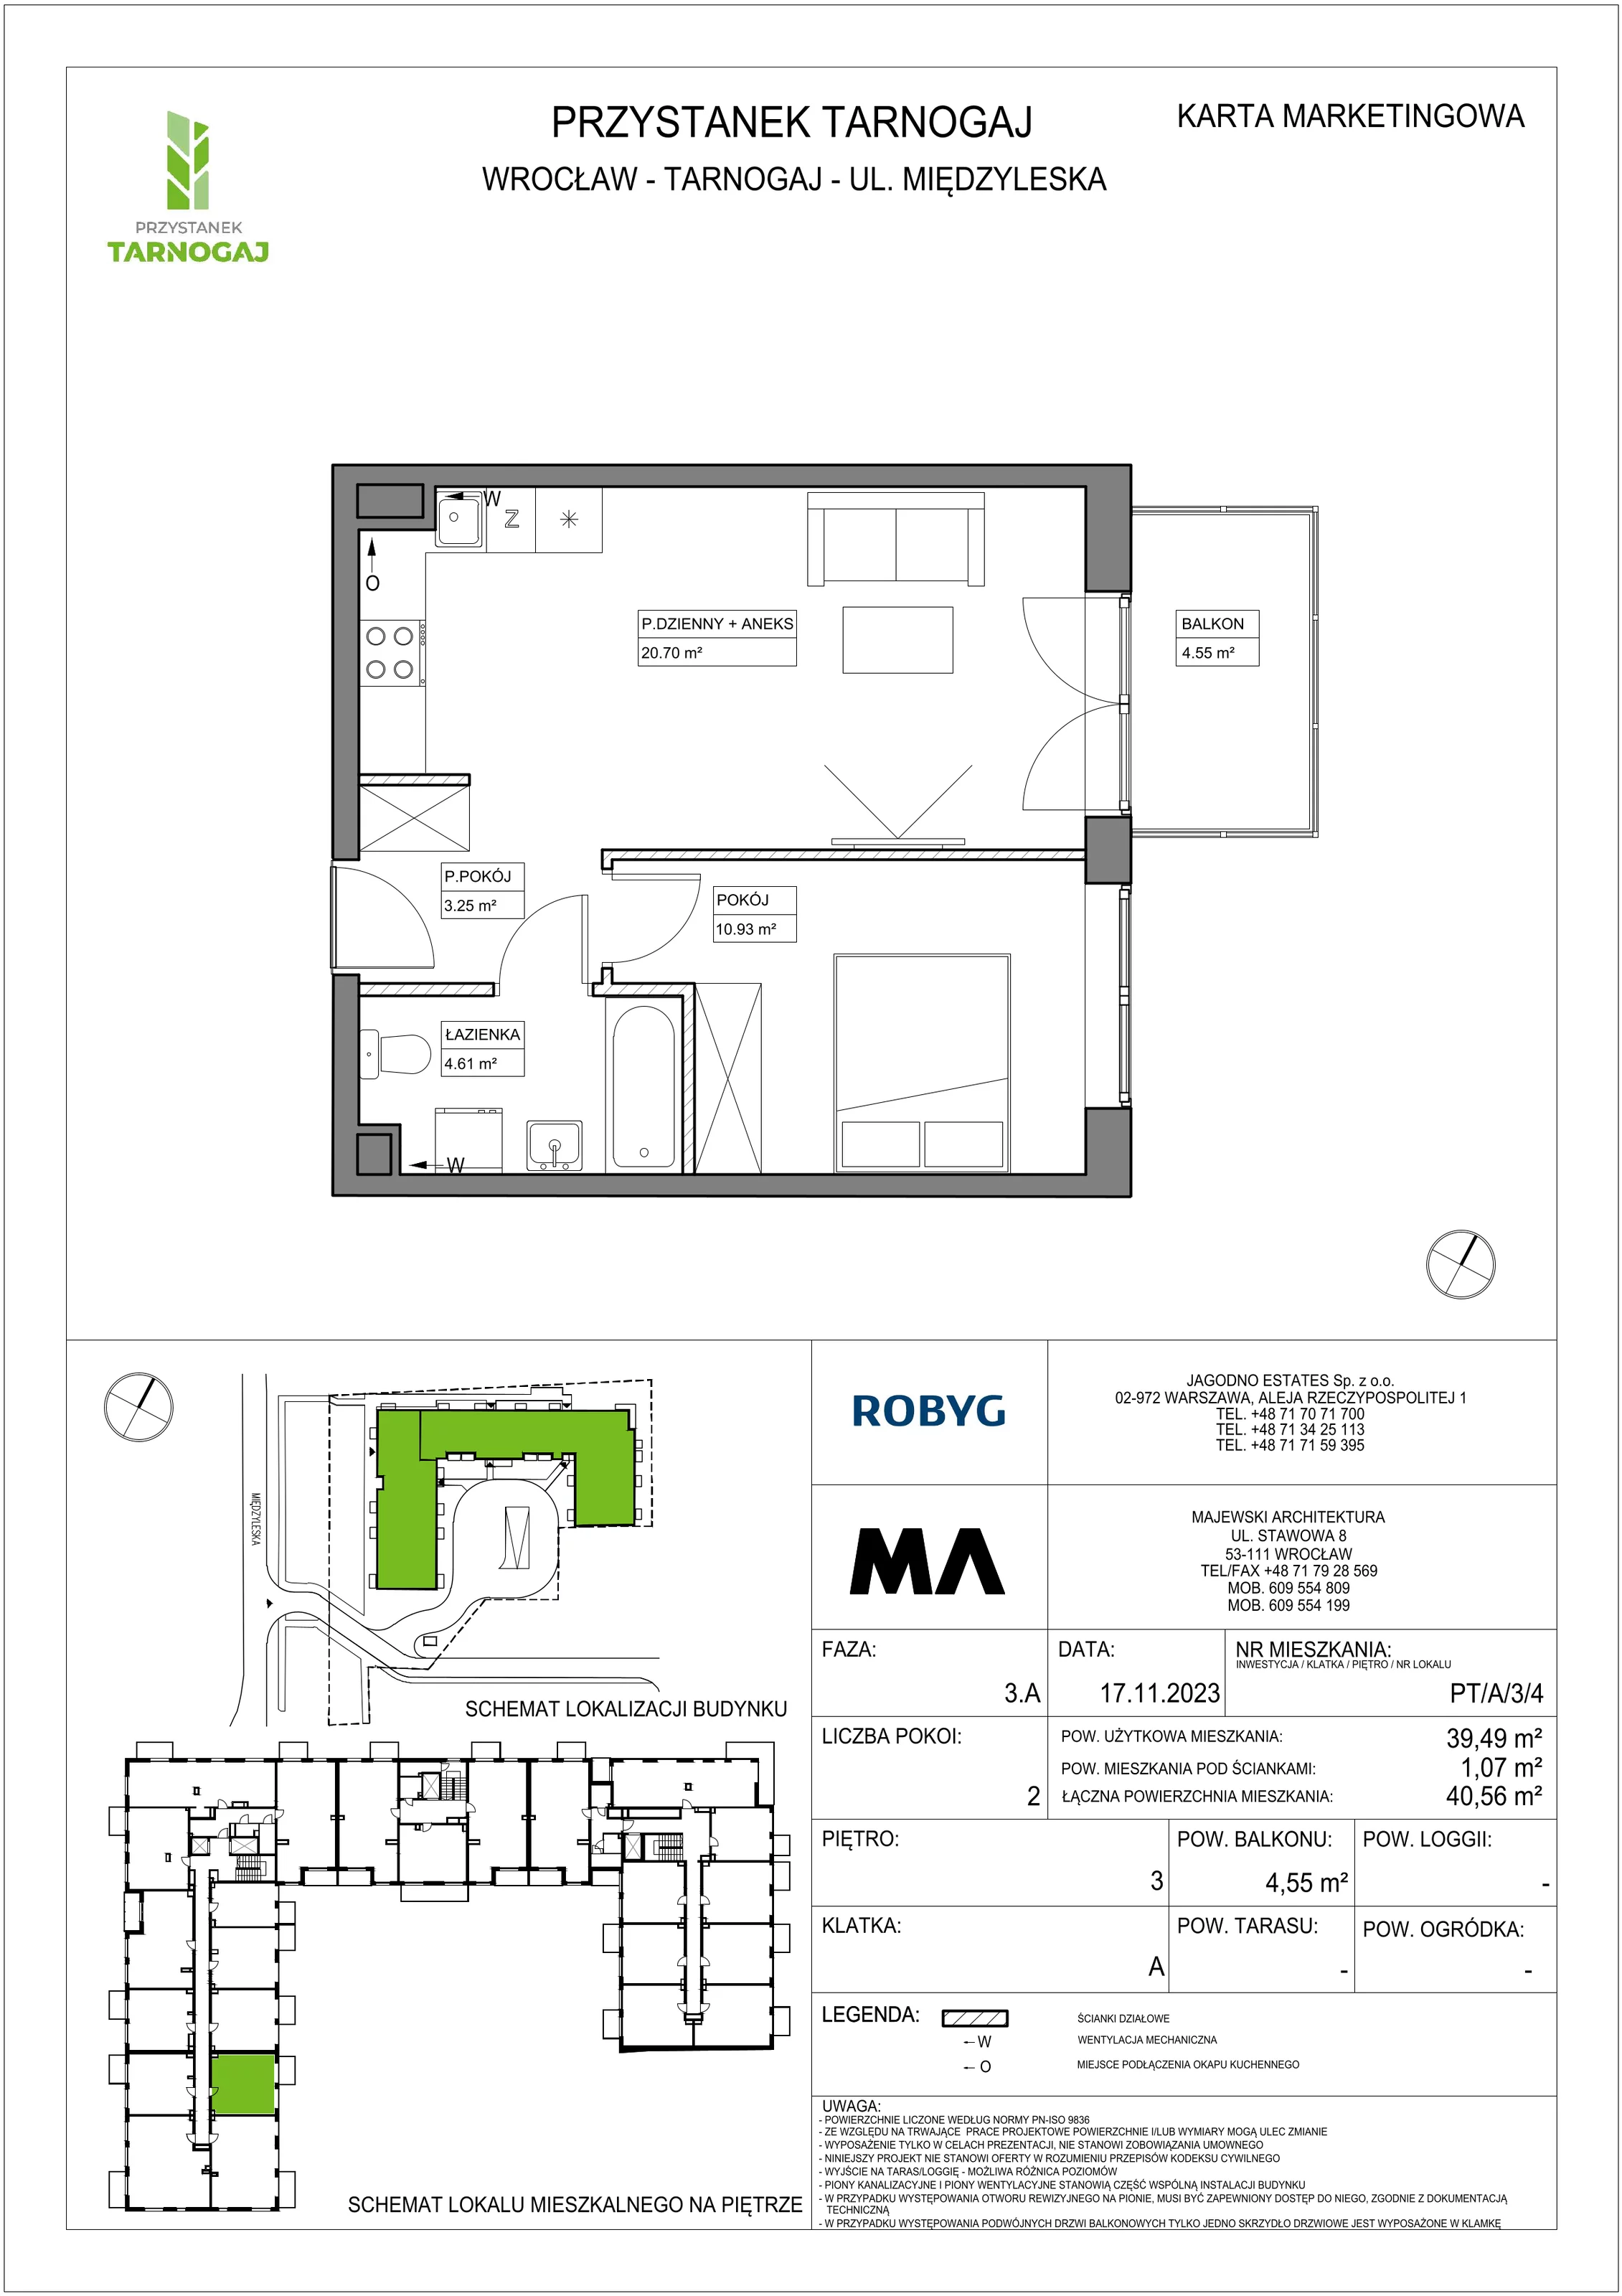 Mieszkanie 39,49 m², piętro 3, oferta nr PT/A/3/4, Przystanek Tarnogaj, Wrocław, Tarnogaj, Krzyki, ul. Międzyleska / Gazowa